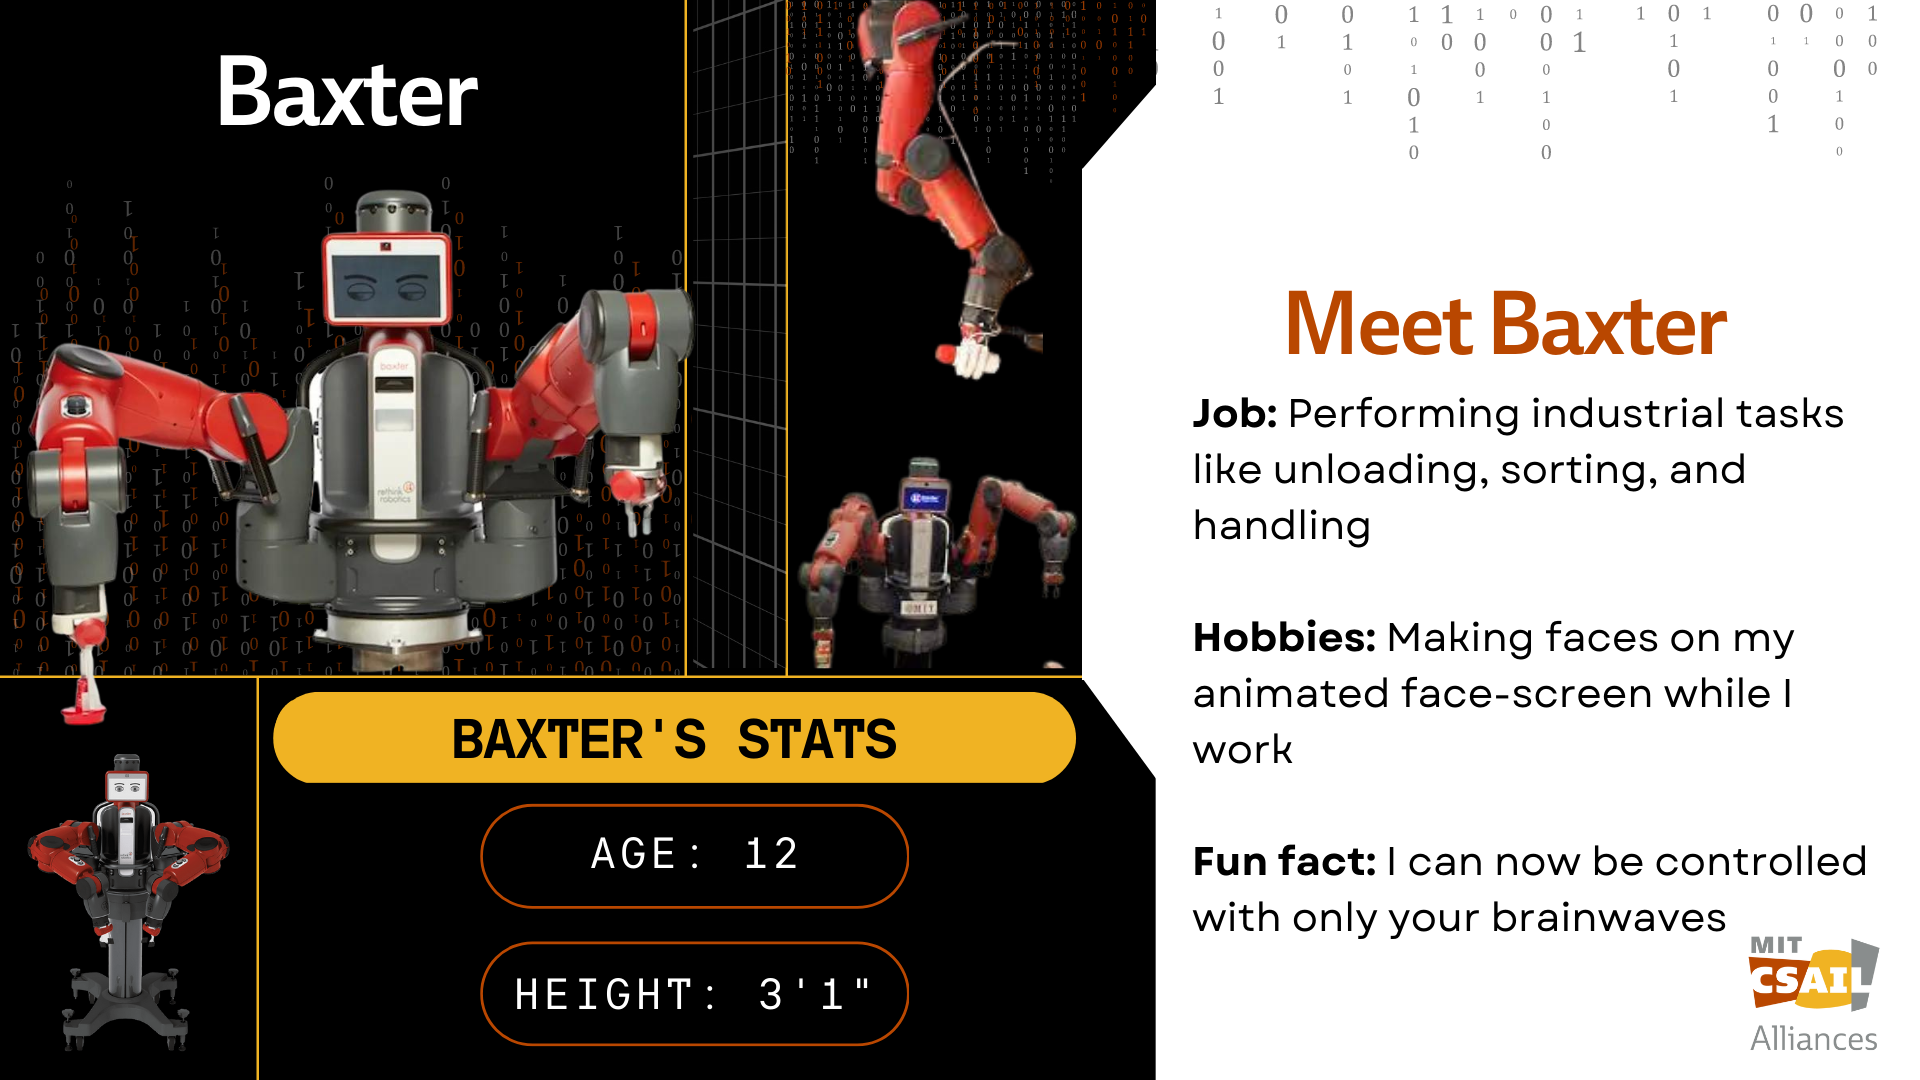 Baxter Robot with text that reads "Baxter"